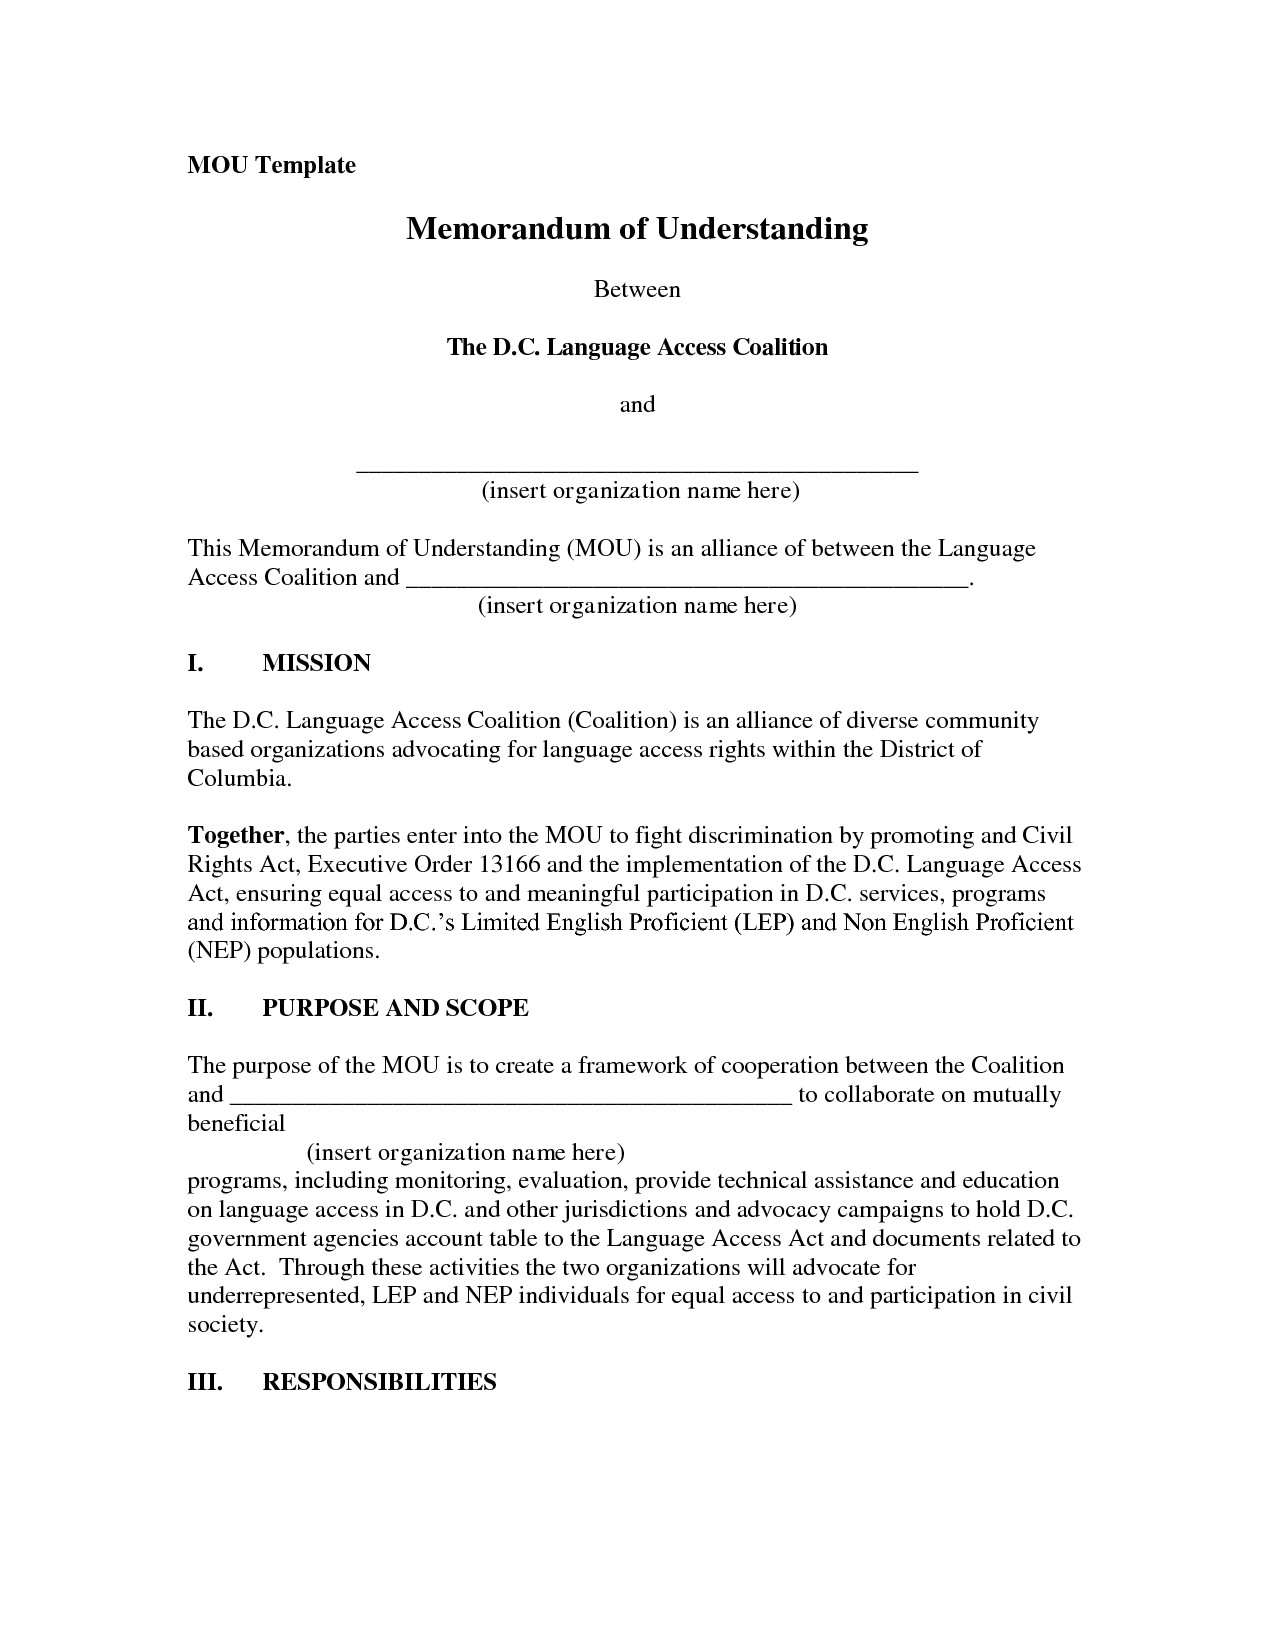 post example memorandum of understanding template 74736